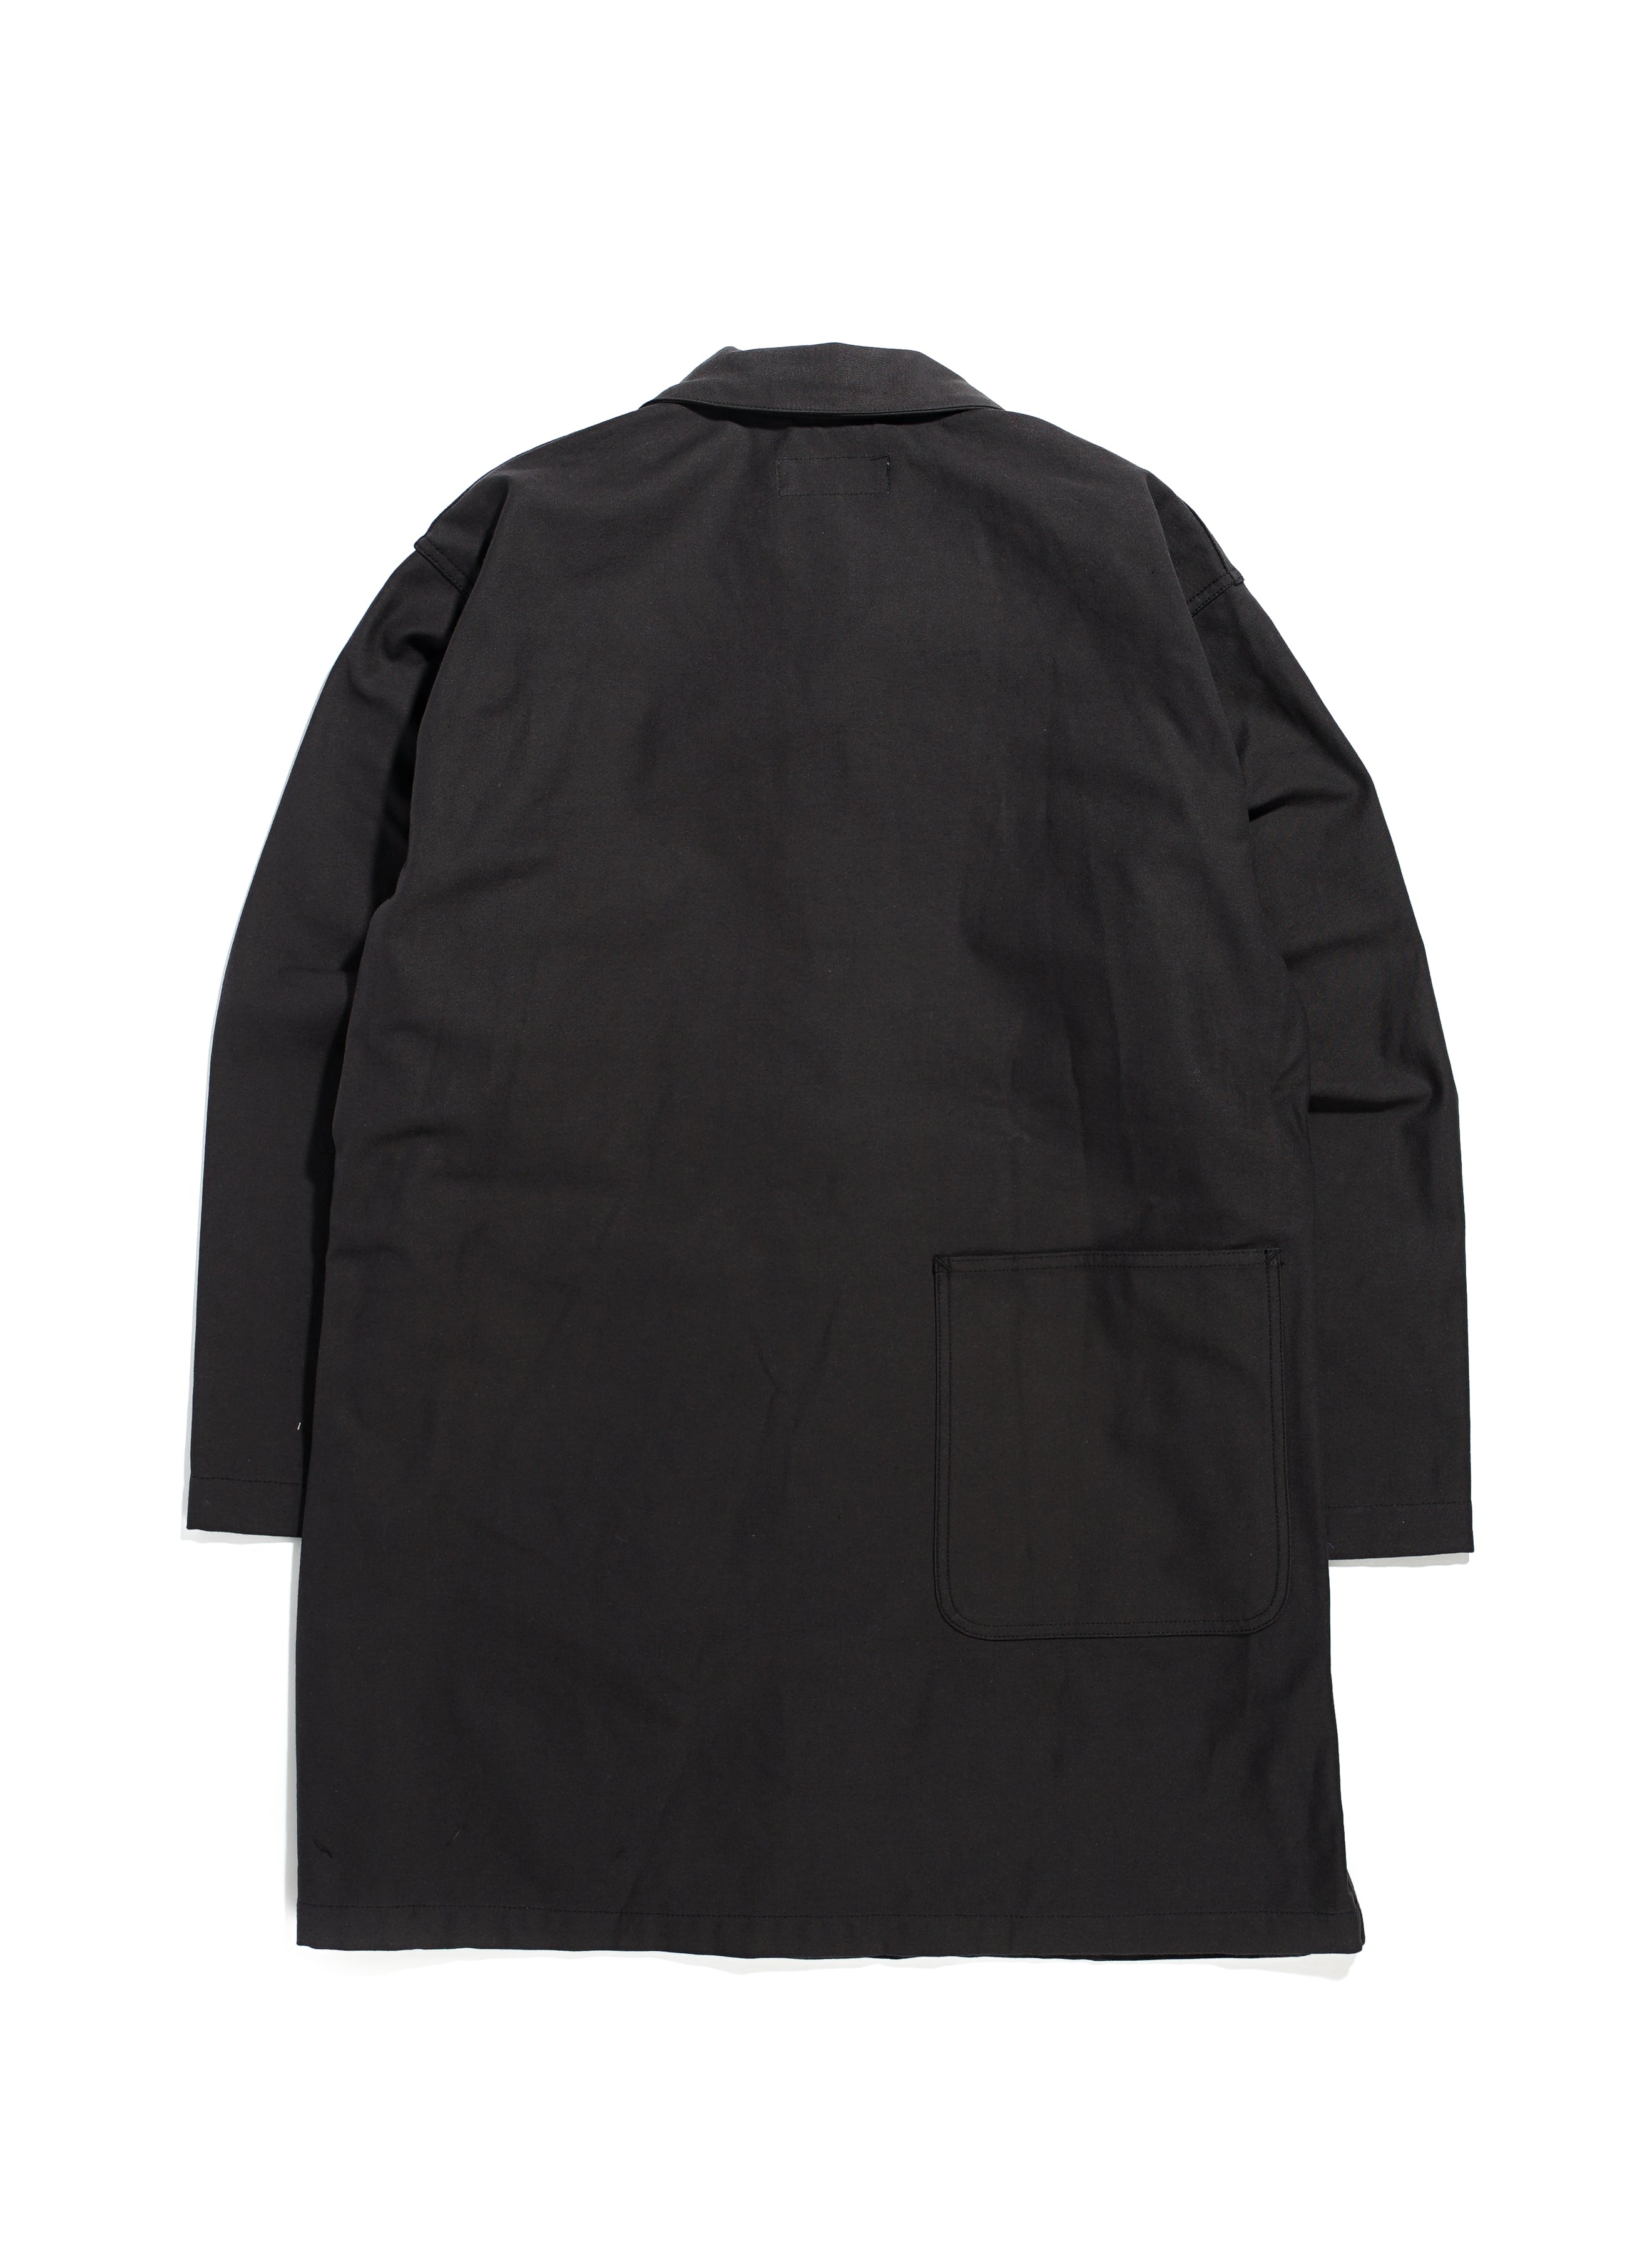 Shop Coat - Black Cotton Reverse Sateen